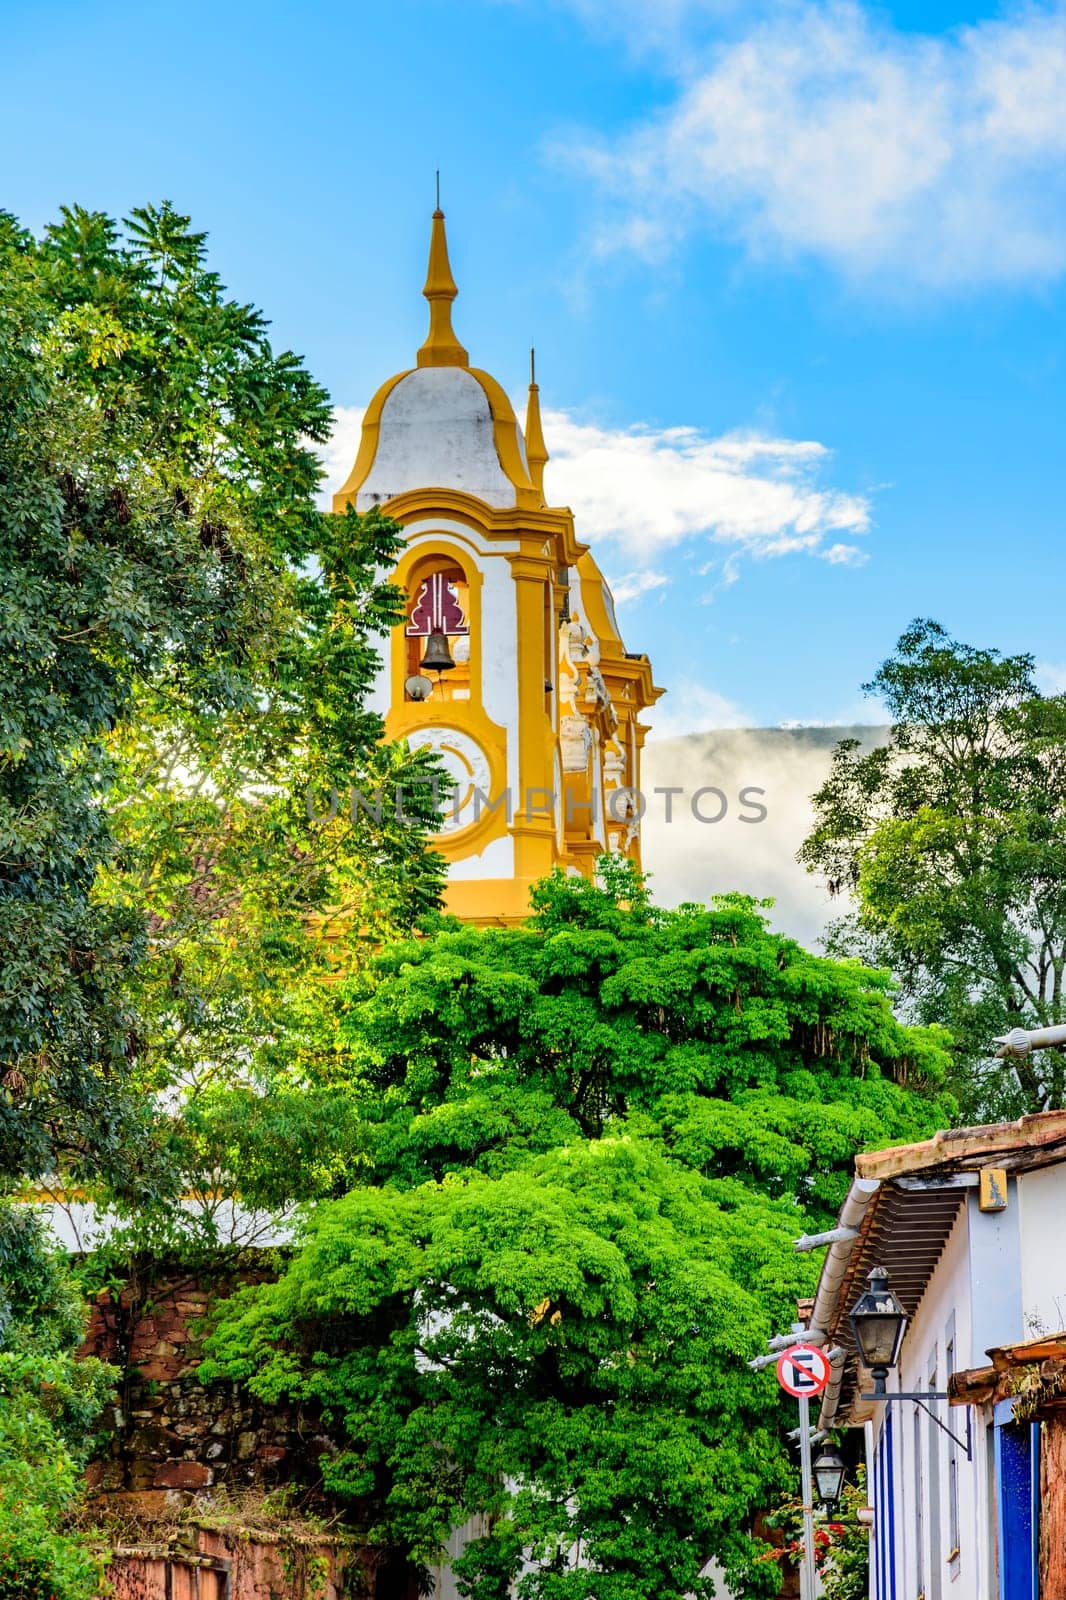 Baroque church tower rising through vegetation by Fred_Pinheiro